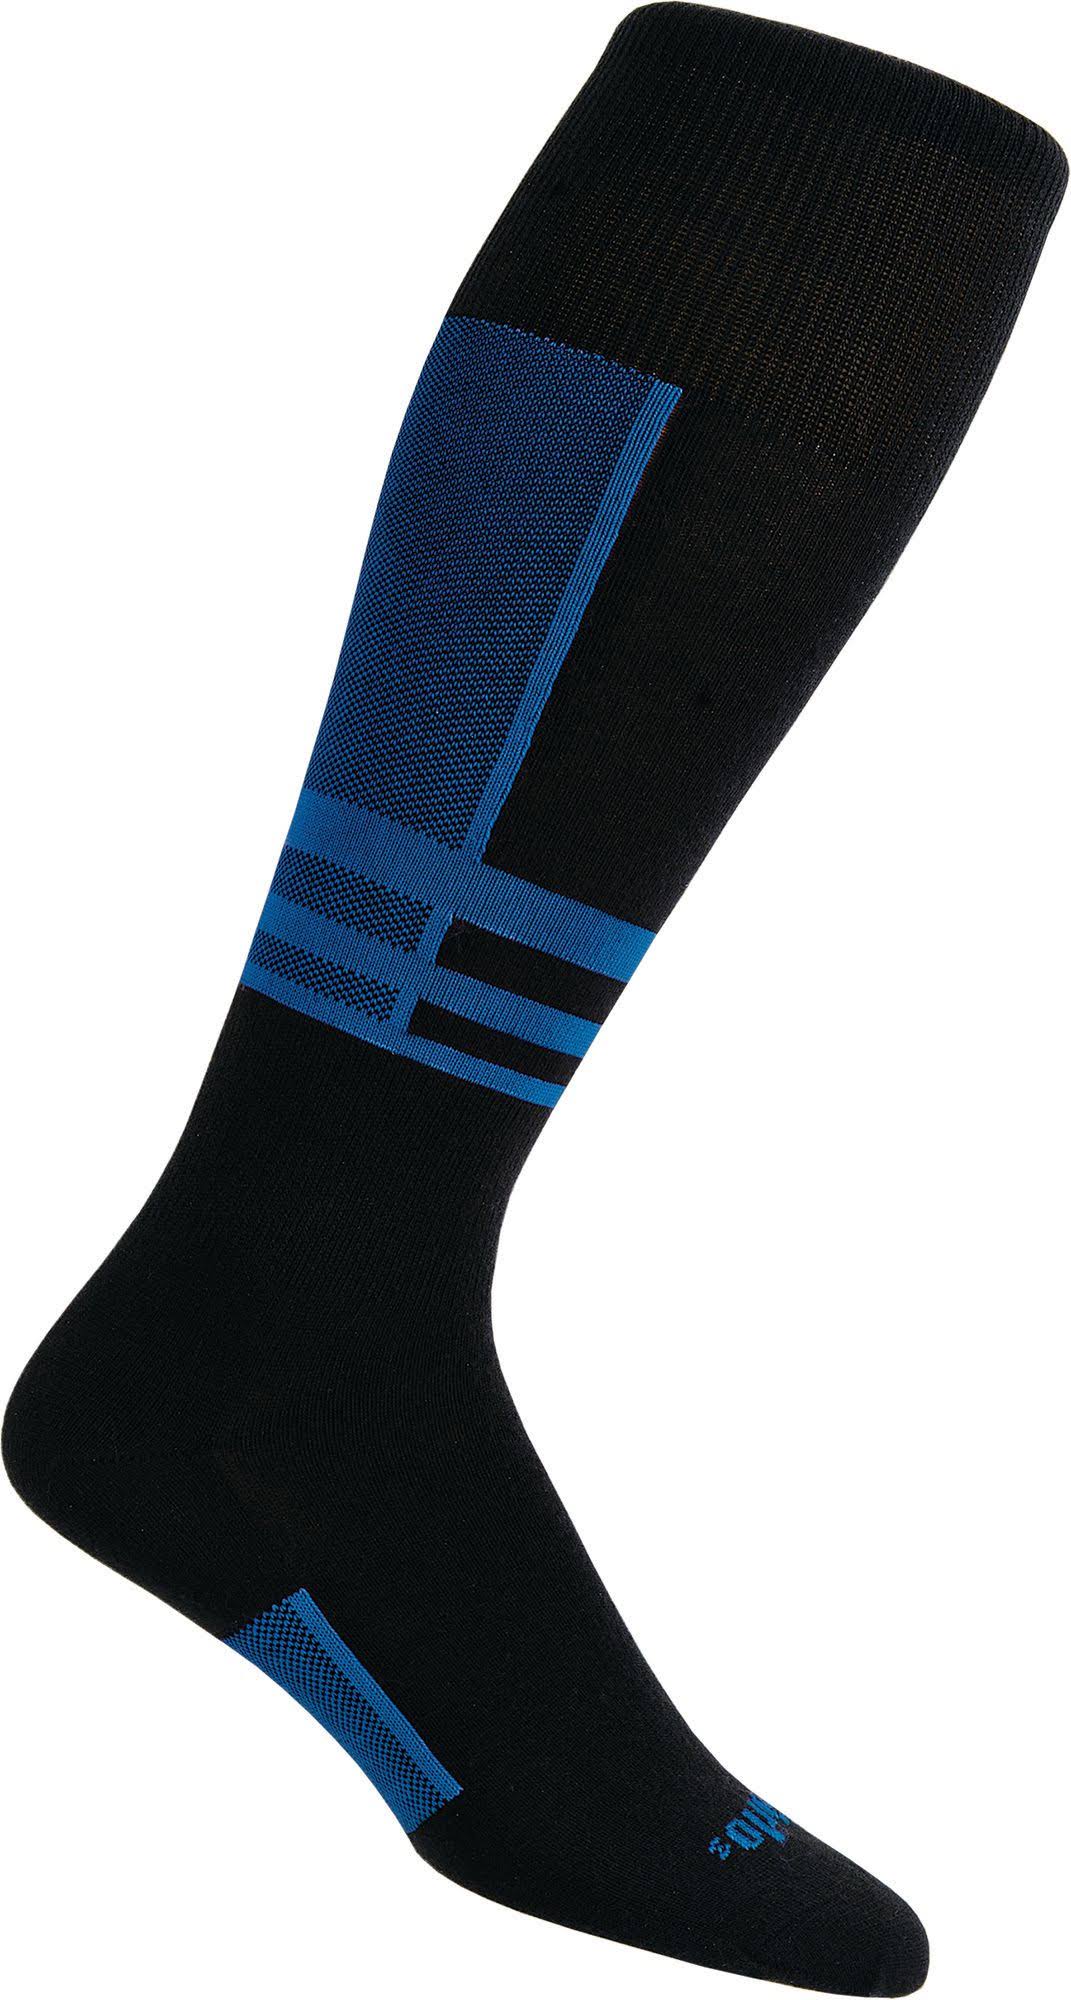 Thorlo Unisex Ski Socks - Laser Blue, XLarge